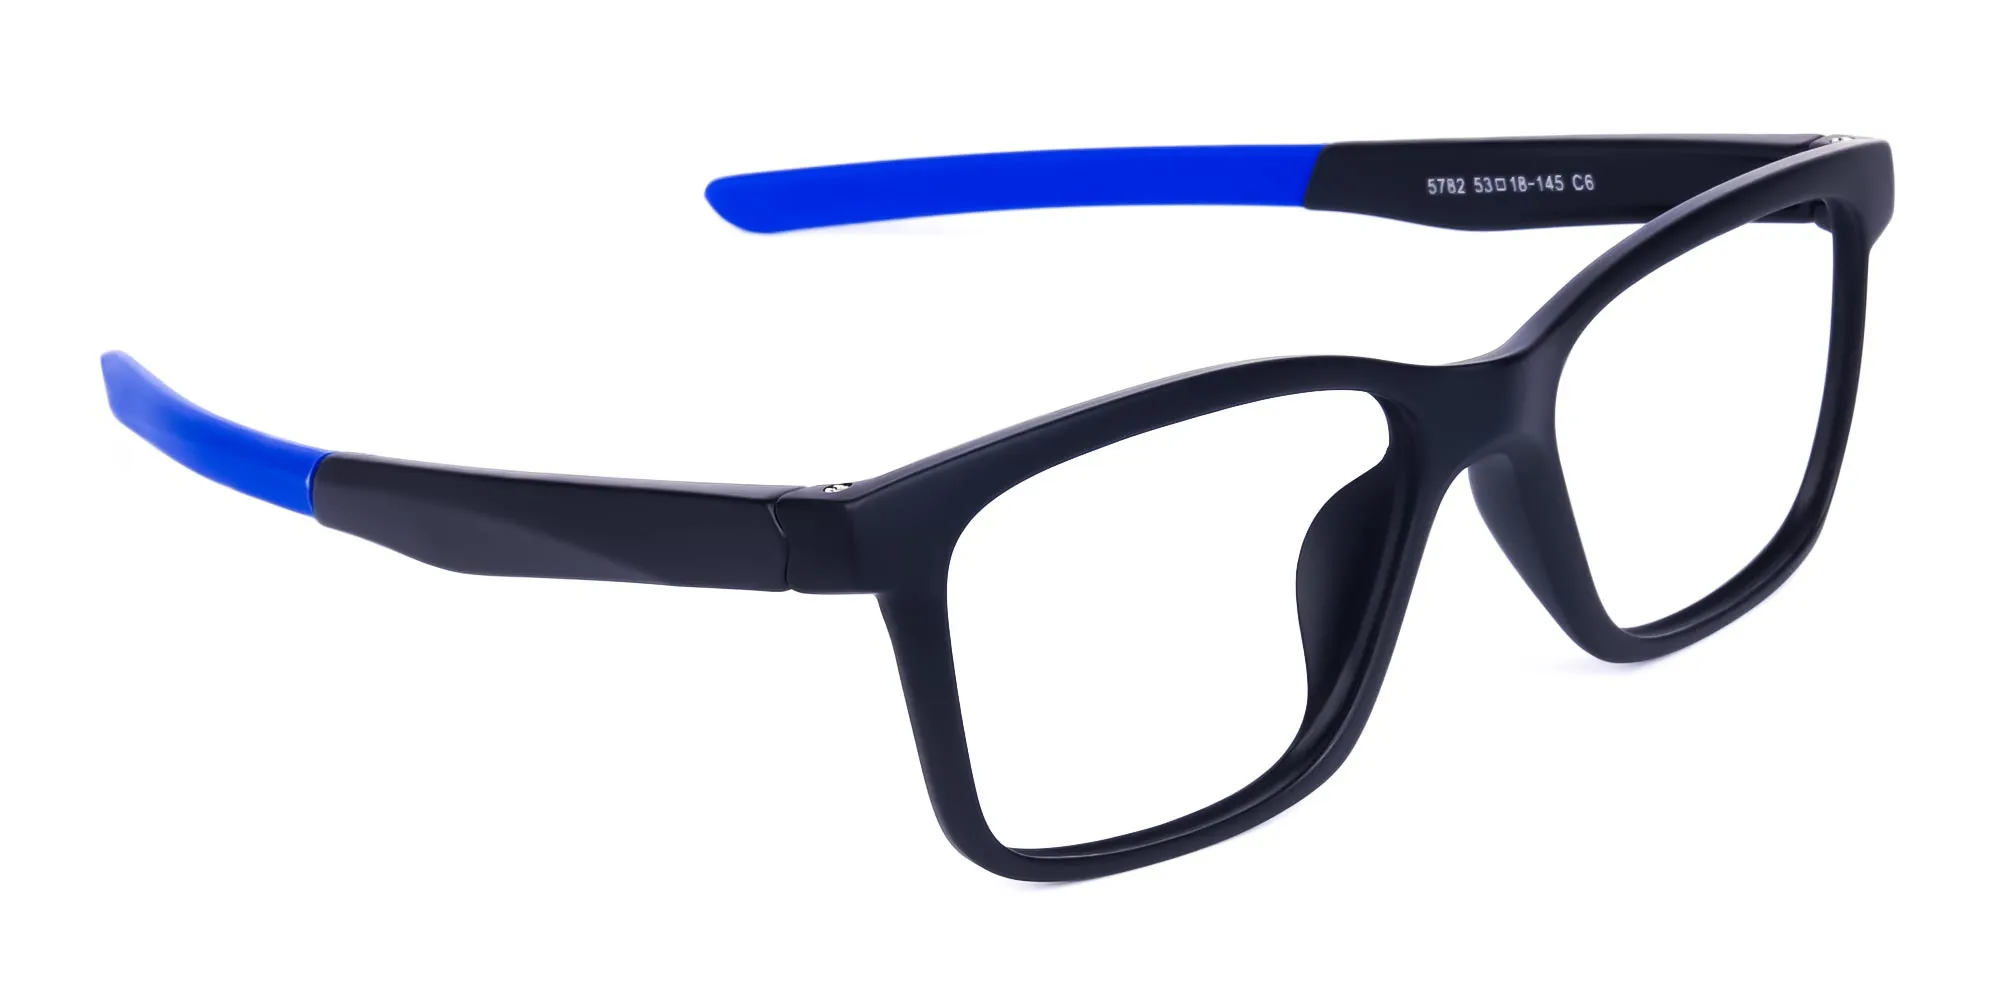 Blue & Black Running Glasses For Men -2